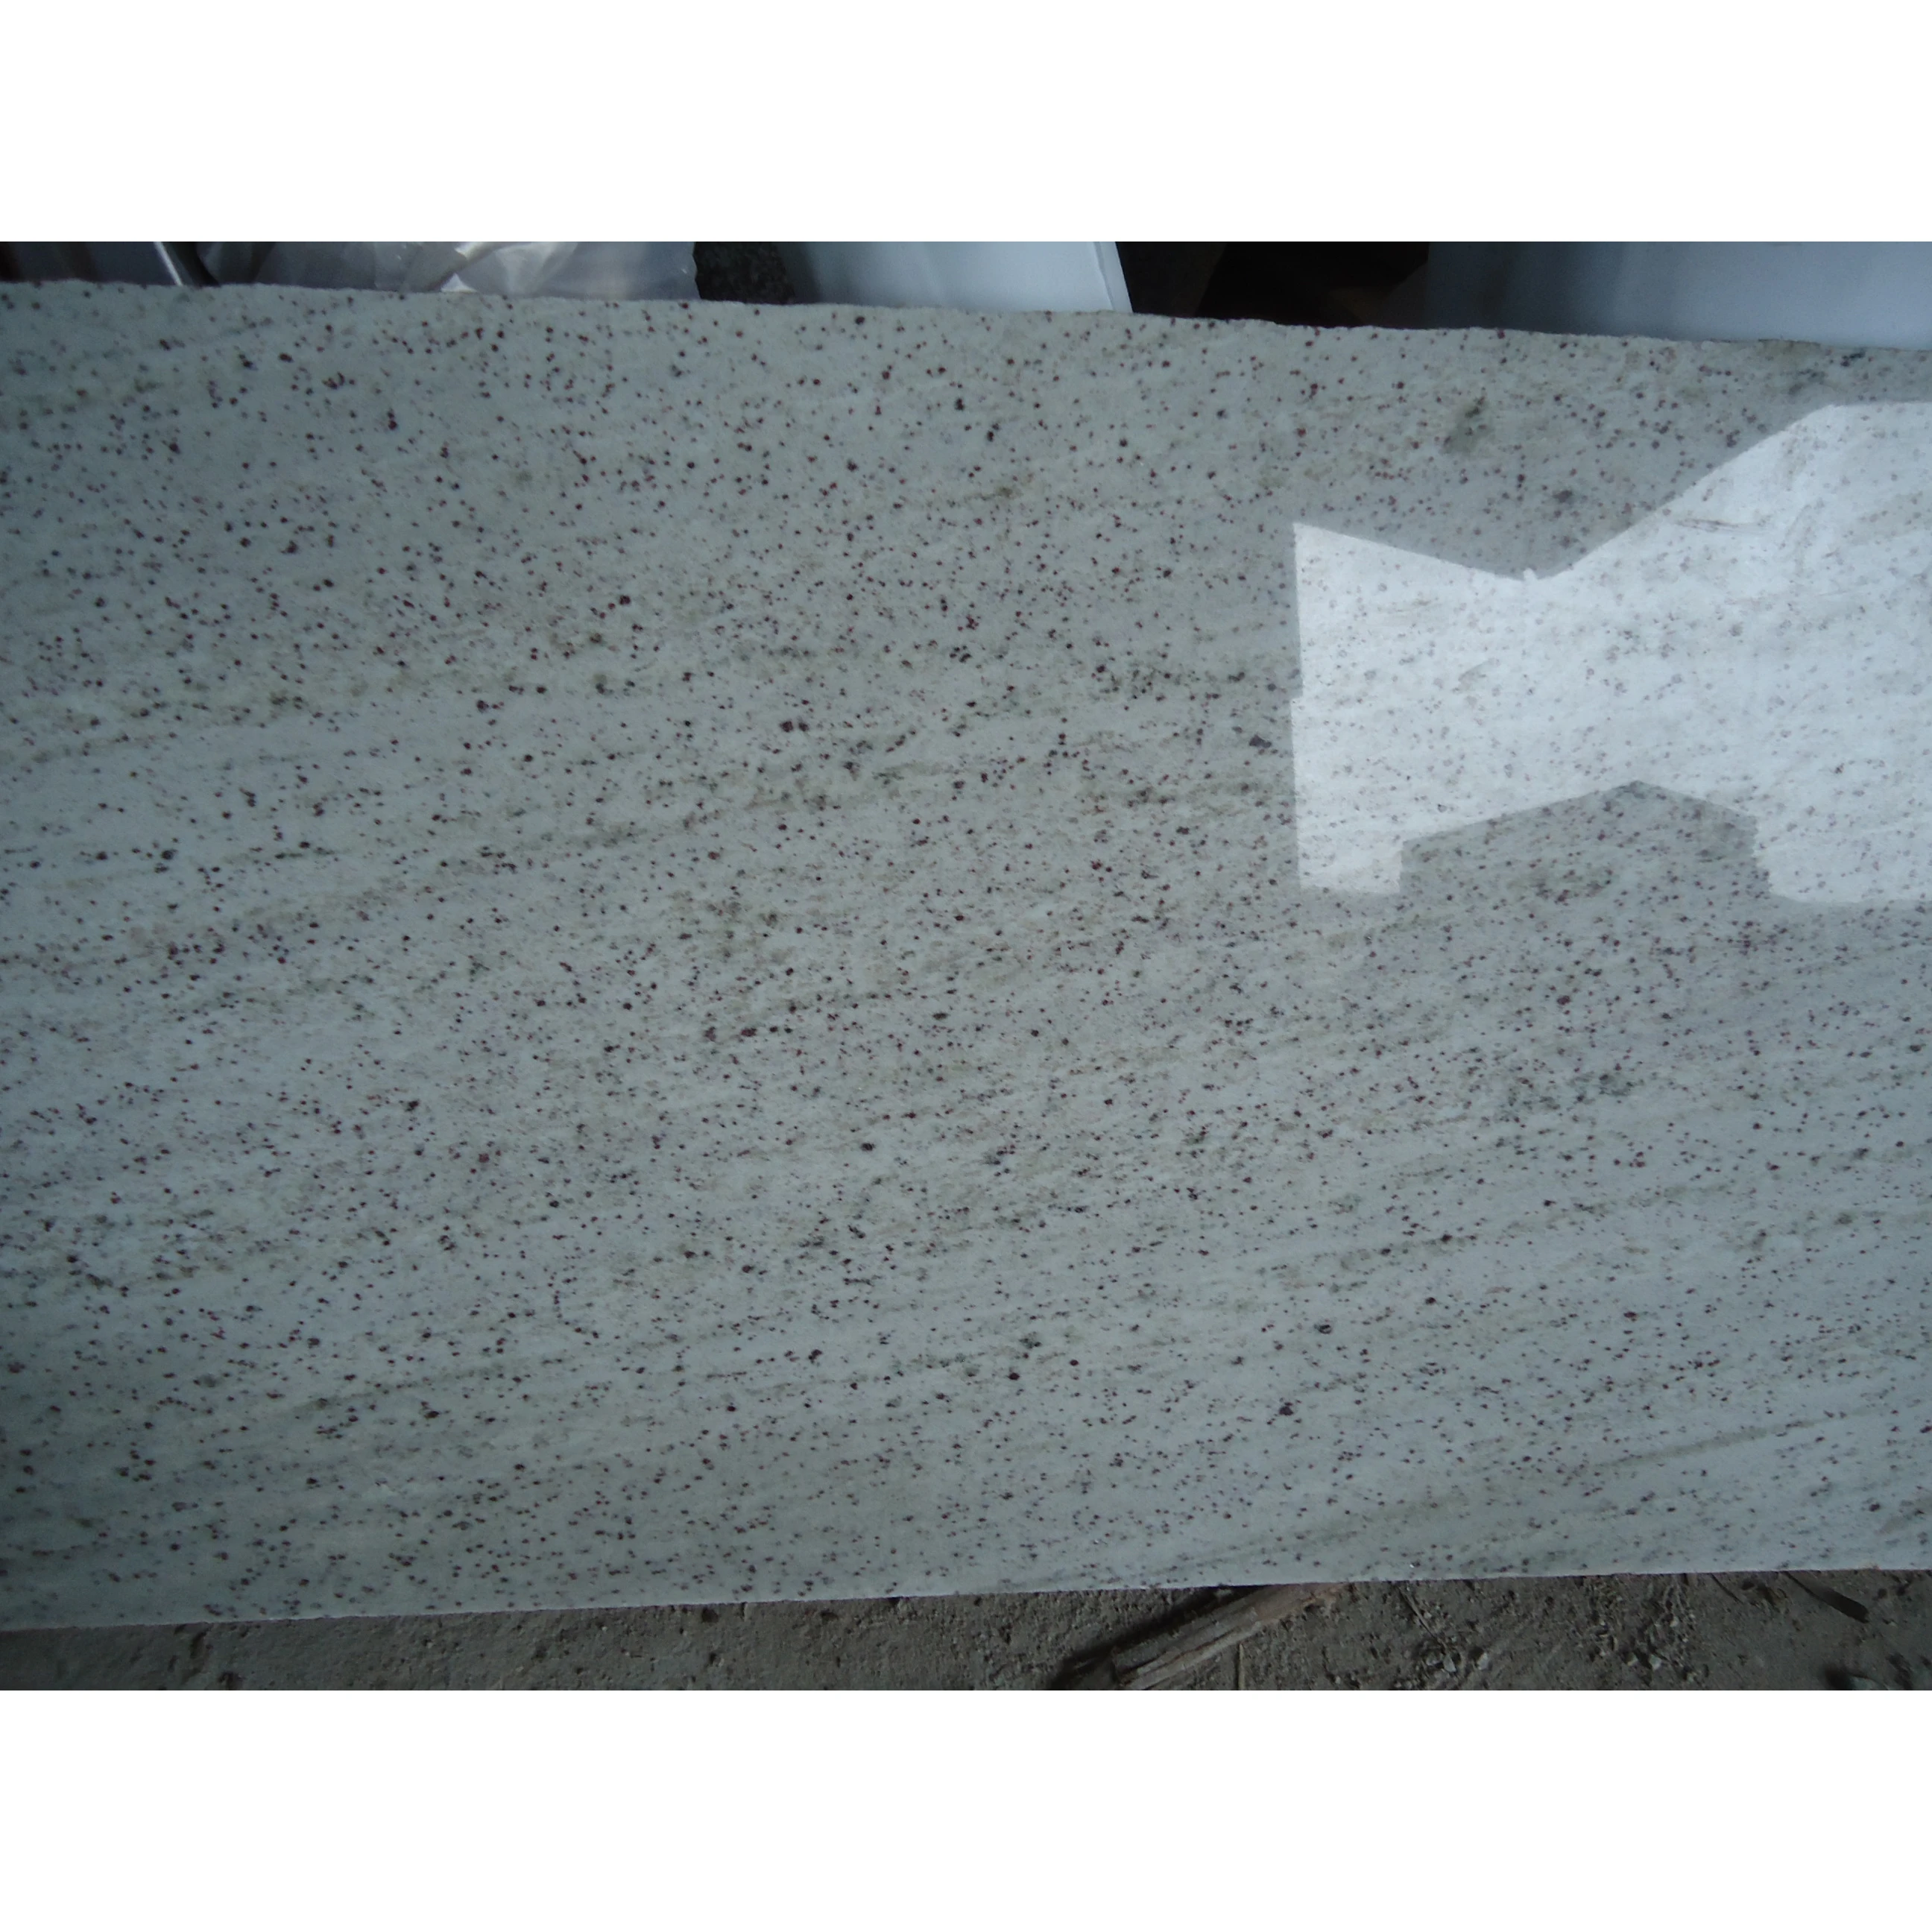 Lowes Granite Countertops Colors Kashmir White Granite Price Buy